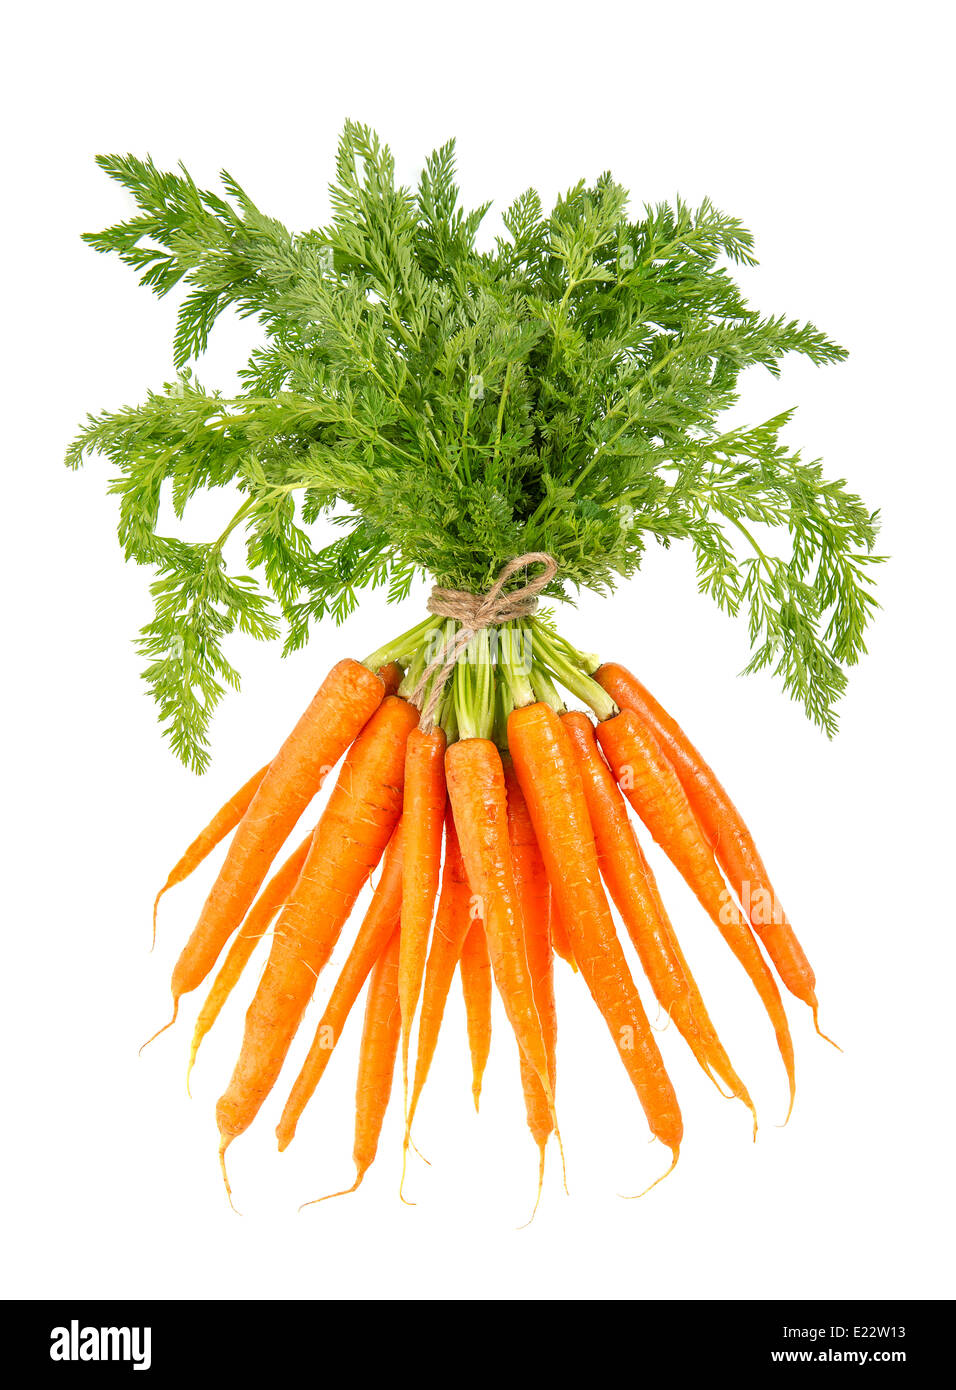 Botte de carottes fraîches avec les fanes vertes isolé sur fond blanc. Légume. Les ingrédients alimentaires Banque D'Images